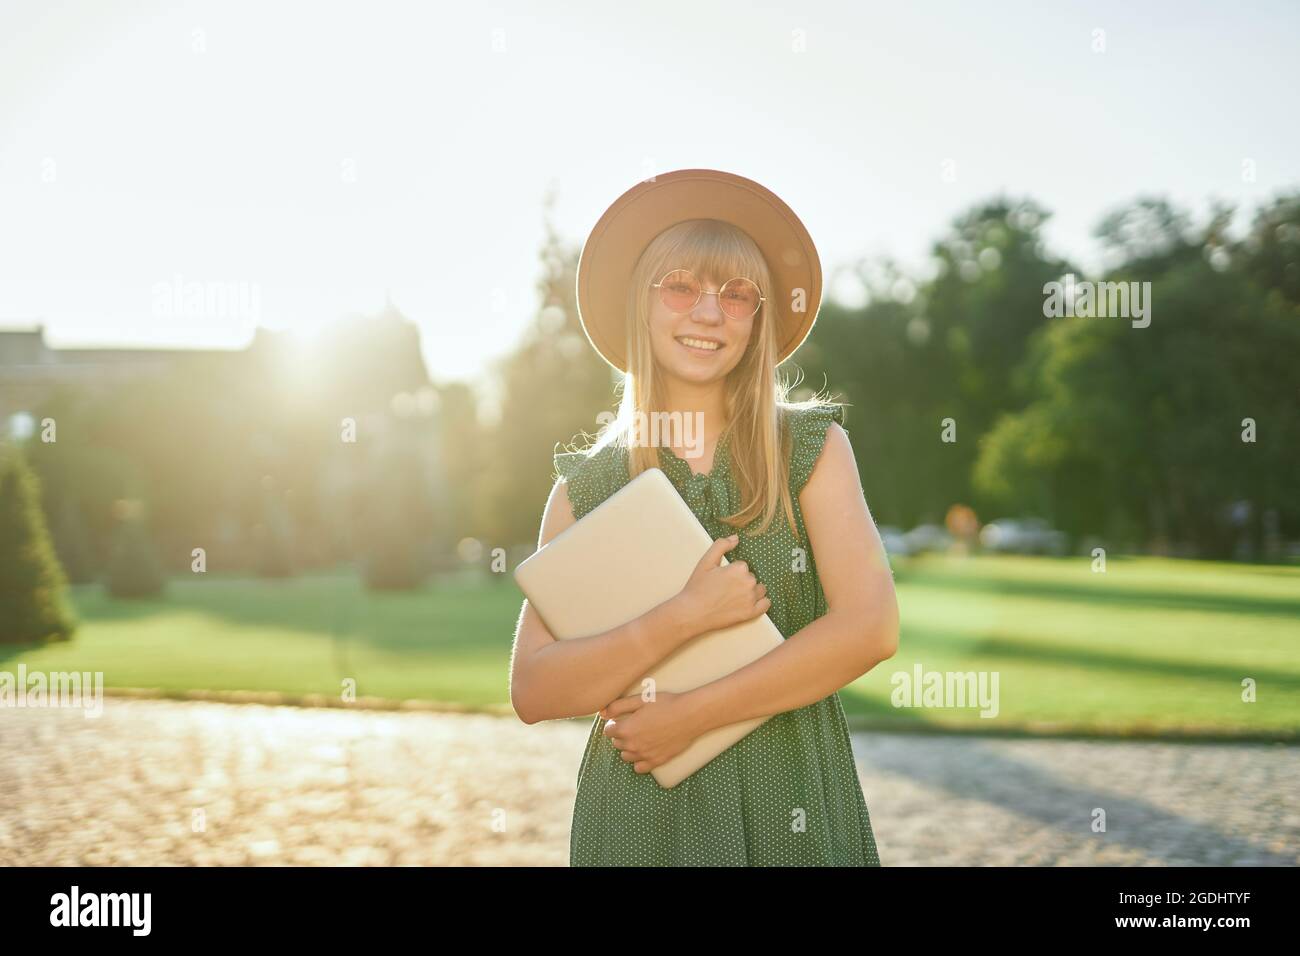 Liebenswert junge blonde Universität oder College-Student Mädchen mit Laptop trägt grünes Kleid und Hut auf dem Campus der Universität. Glückliche weibliche Schule oder Schülerin, pädagogisches Konzept. Hochwertige Bilder Stockfoto